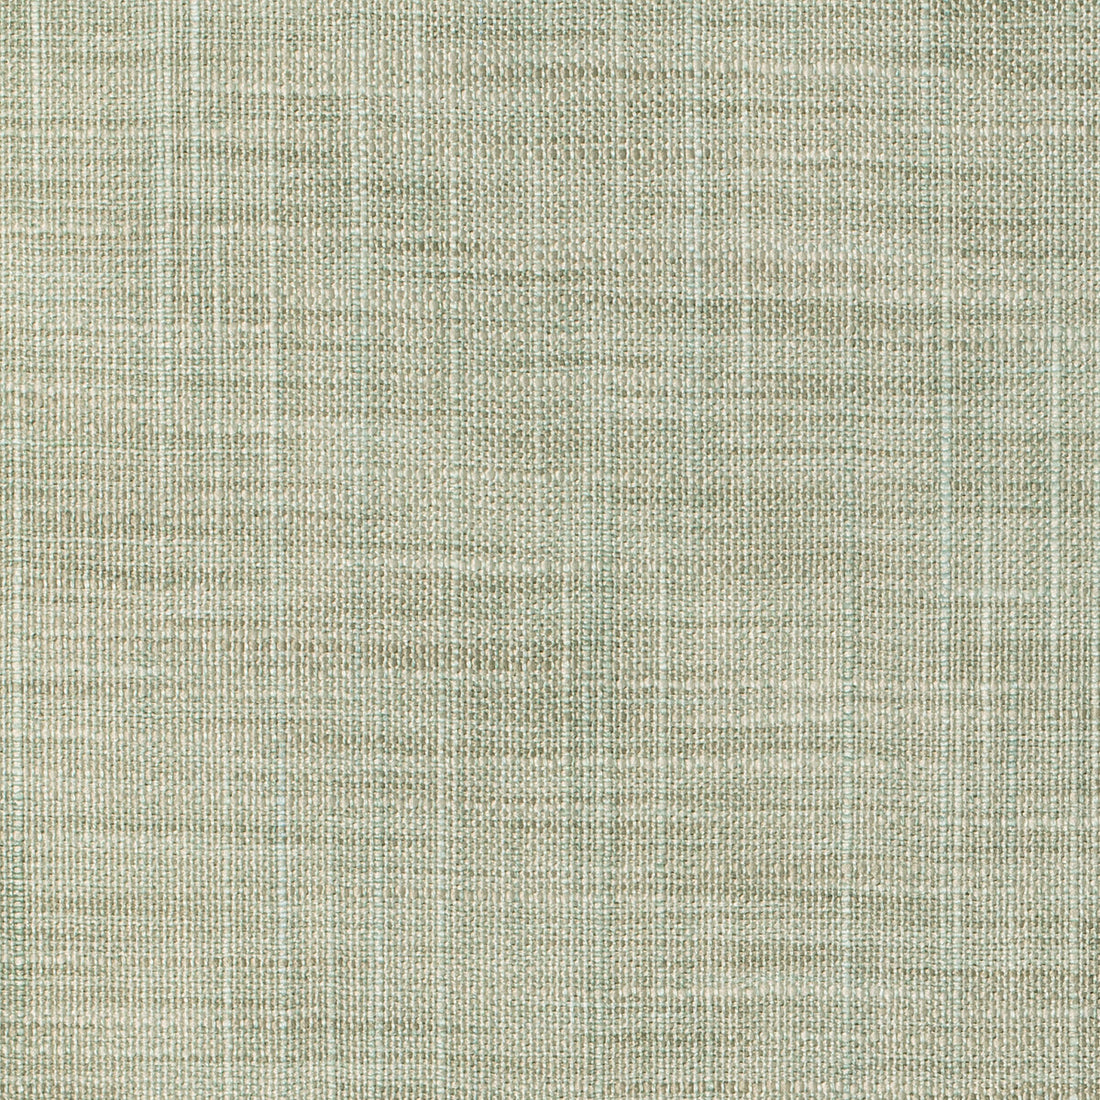 Kravet Basics fabric in 8813-35 color - pattern 8813.35.0 - by Kravet Basics